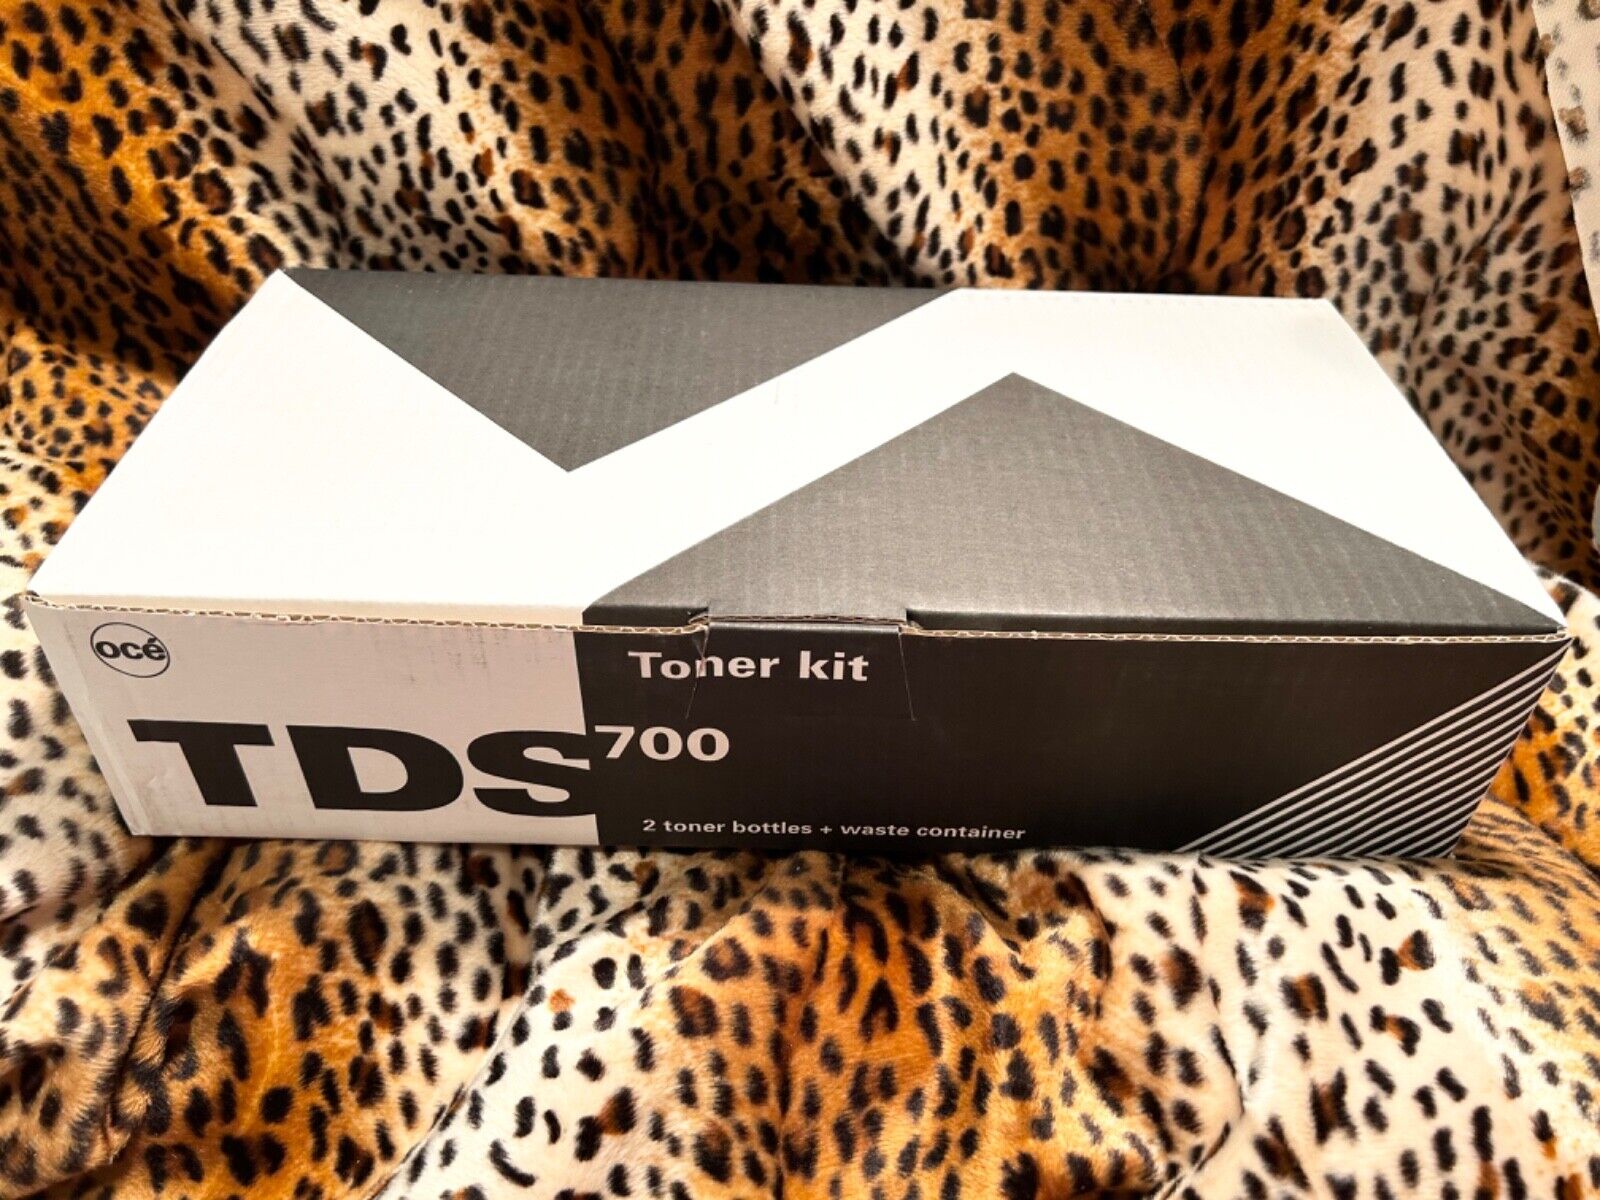 OCE TDS700 Toner Kit 2 BOTTLES Black Toner & Waste Container